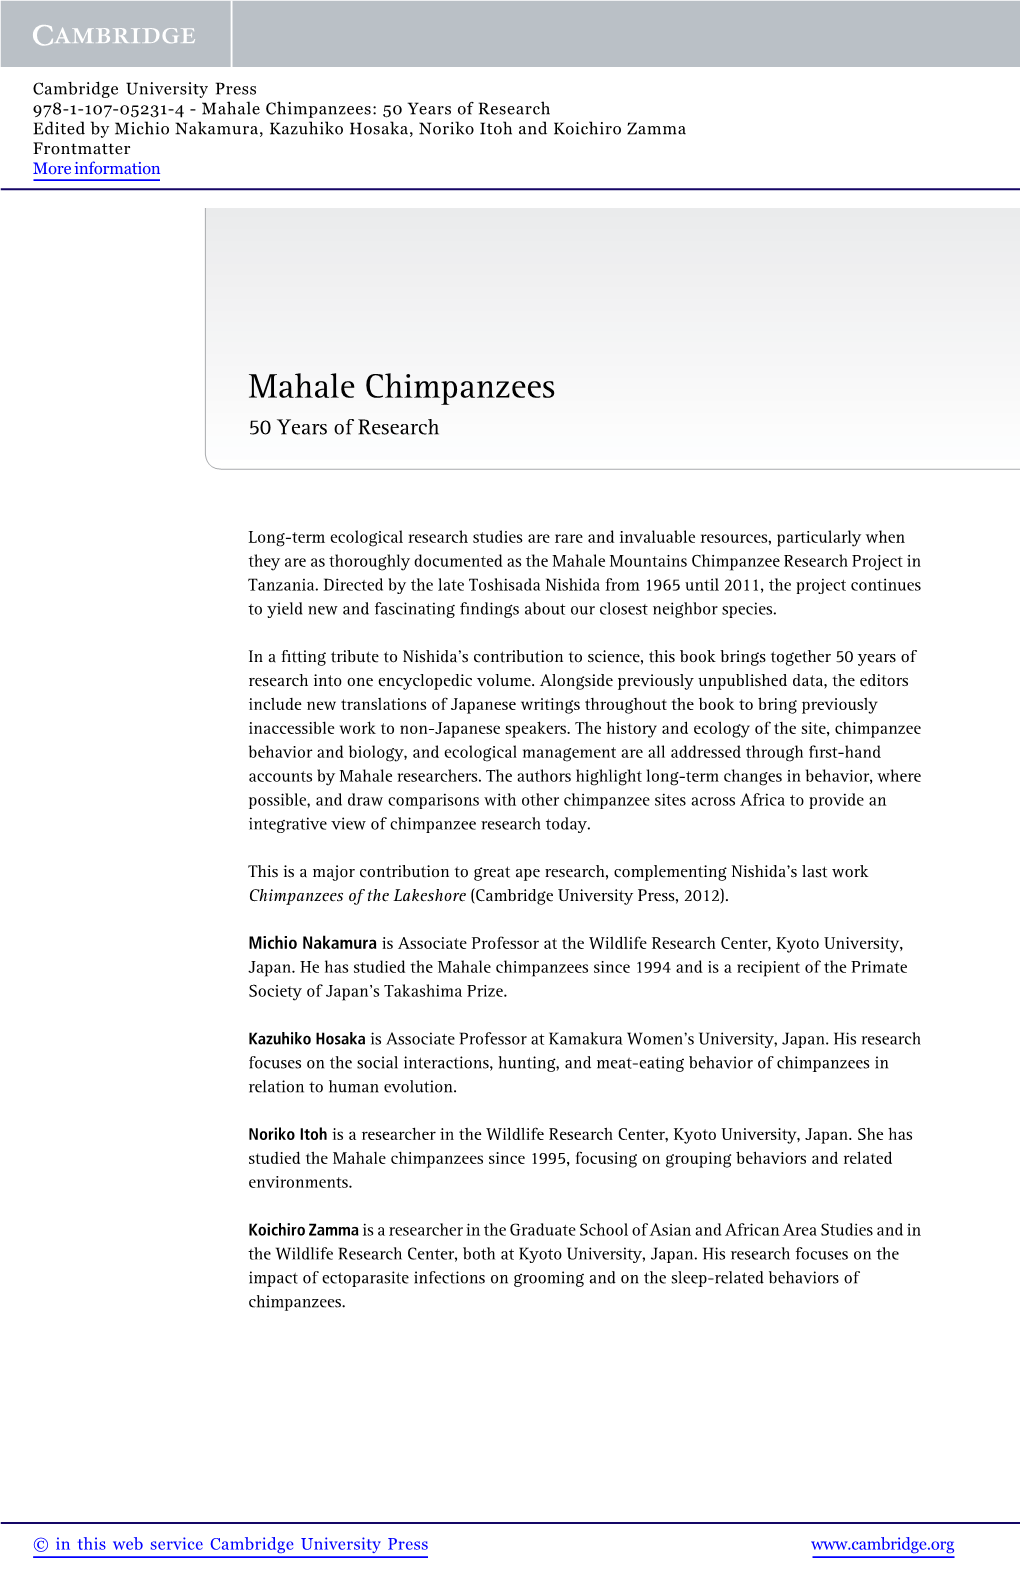 Mahale Chimpanzees: 50 Years of Research Edited by Michio Nakamura, Kazuhiko Hosaka, Noriko Itoh and Koichiro Zamma Frontmatter More Information